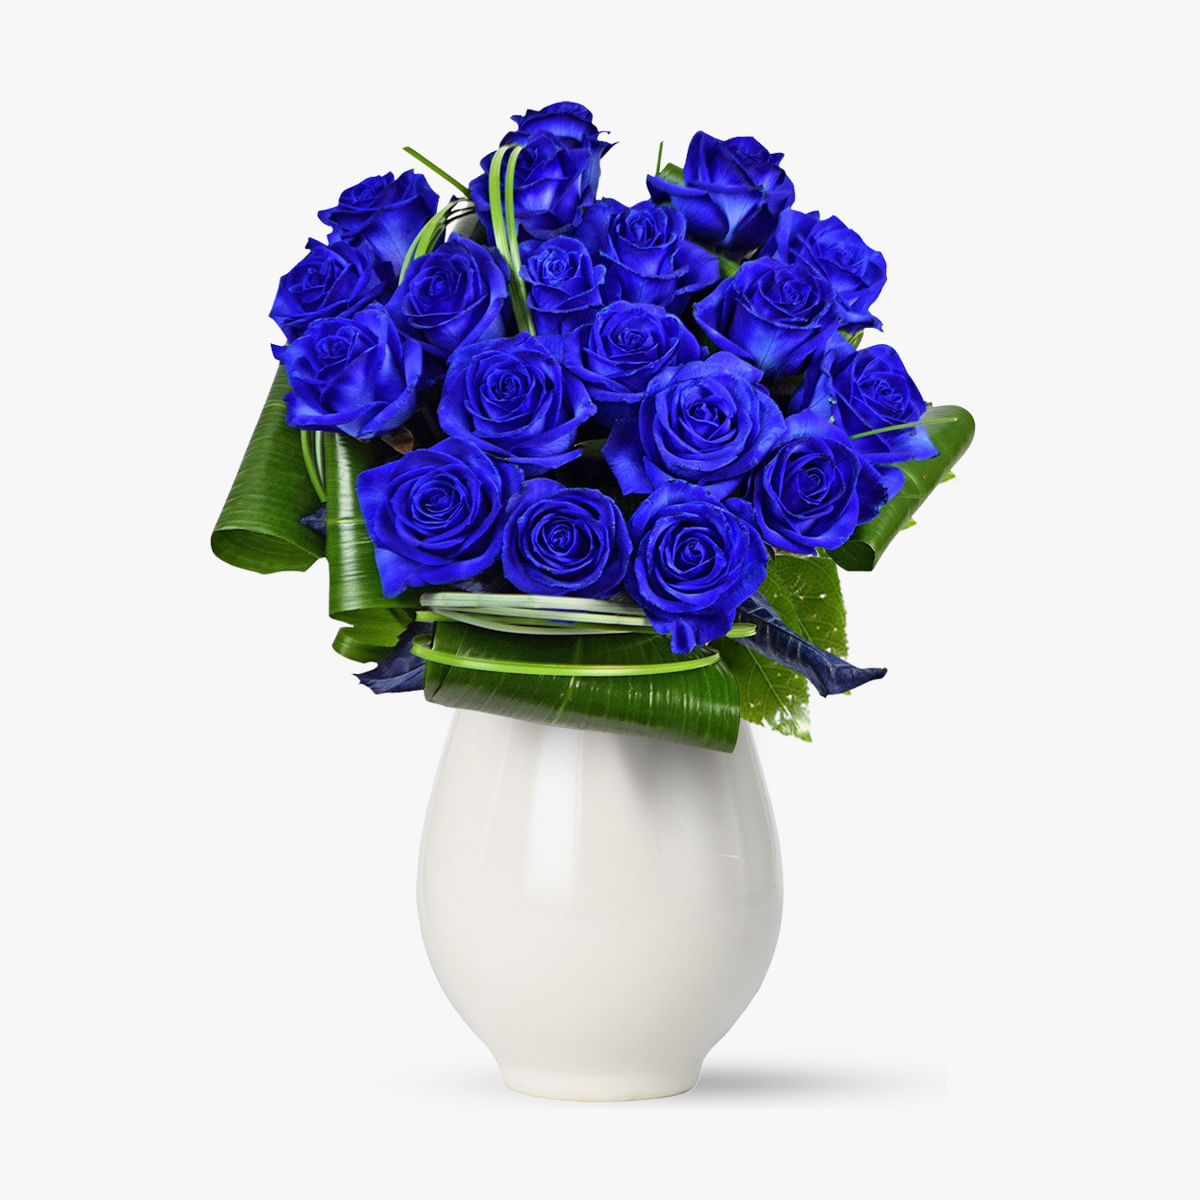 Buchet de 19 trandafiri albastri – Standard albastri imagine 2022